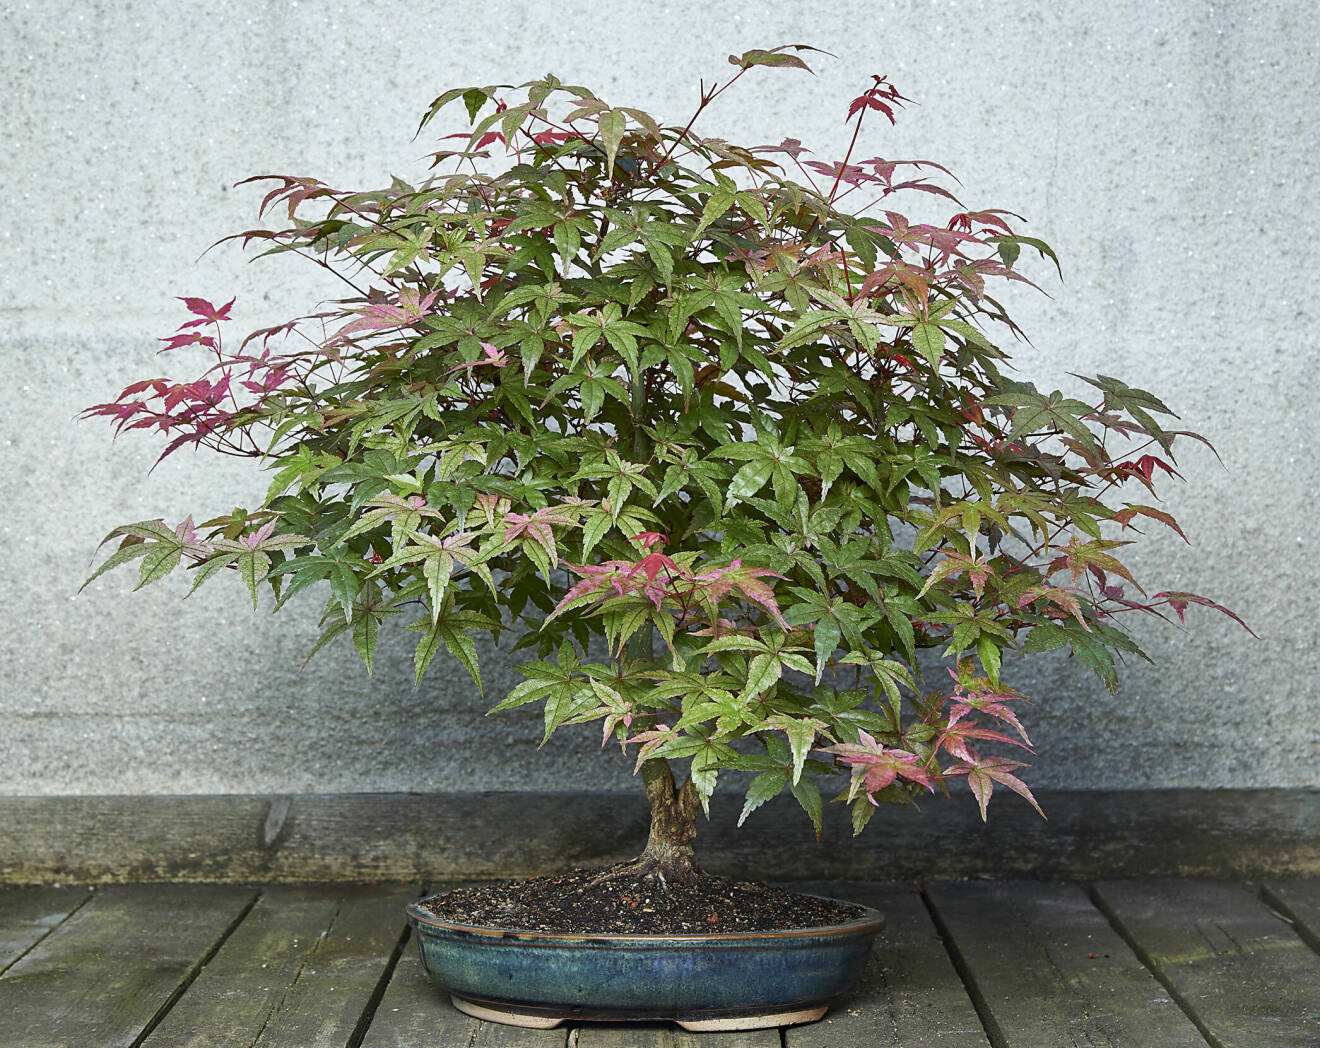 Den japanska lönnen 'Deshojo' skiftar i färg från ceriserosa på våren, till grönt under sommaren och på hösten till rött. Trädet tål ej frost.